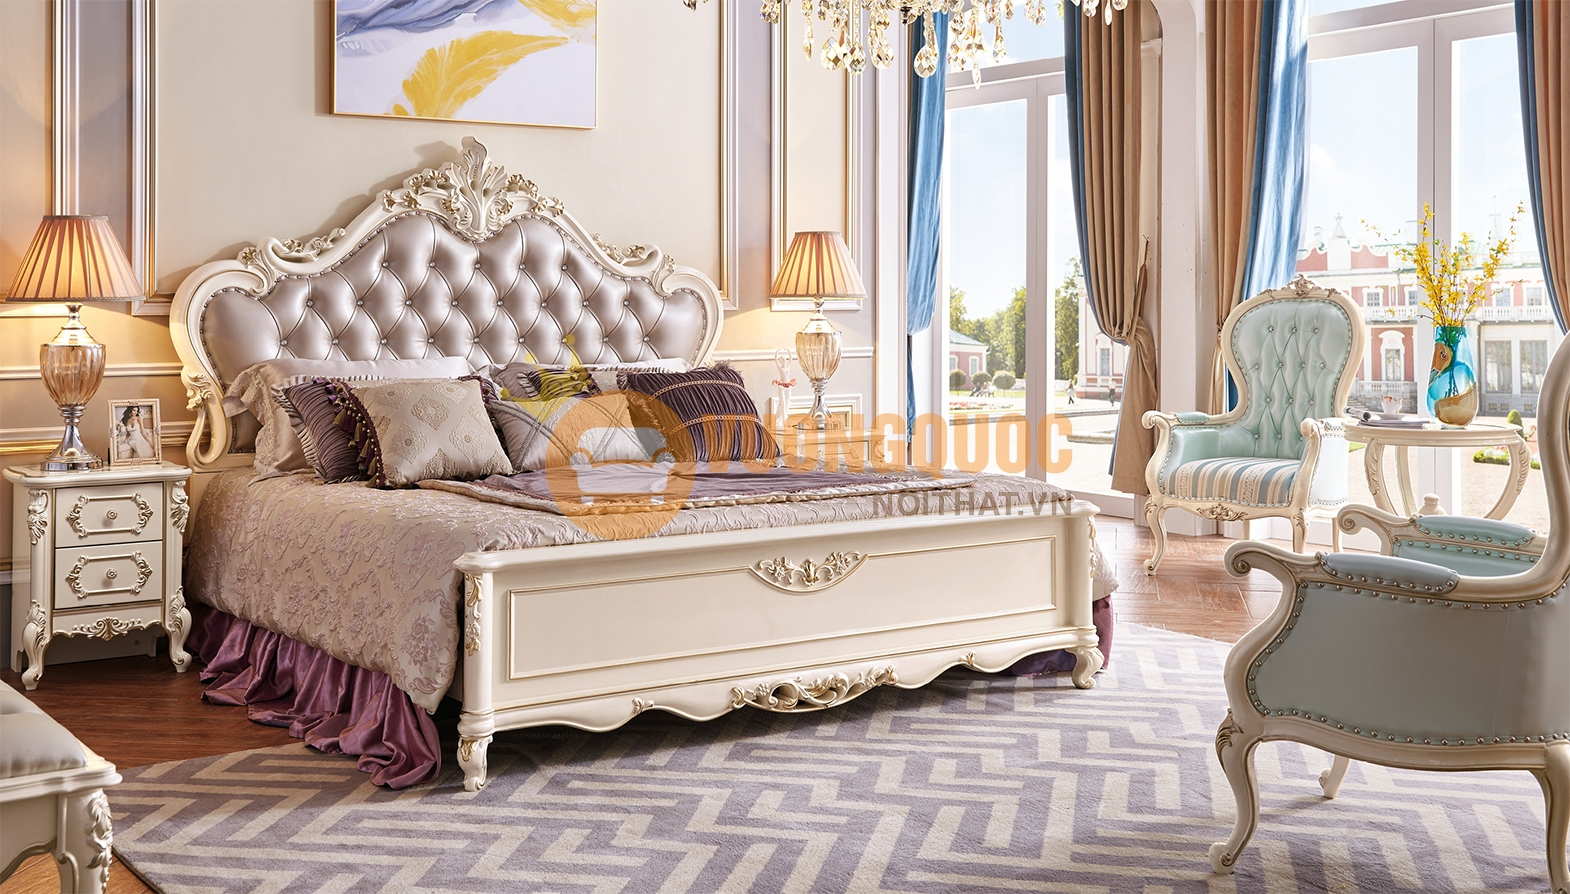 Thiết kế giường ngủ phong cách tân cổ điển sang trọng 